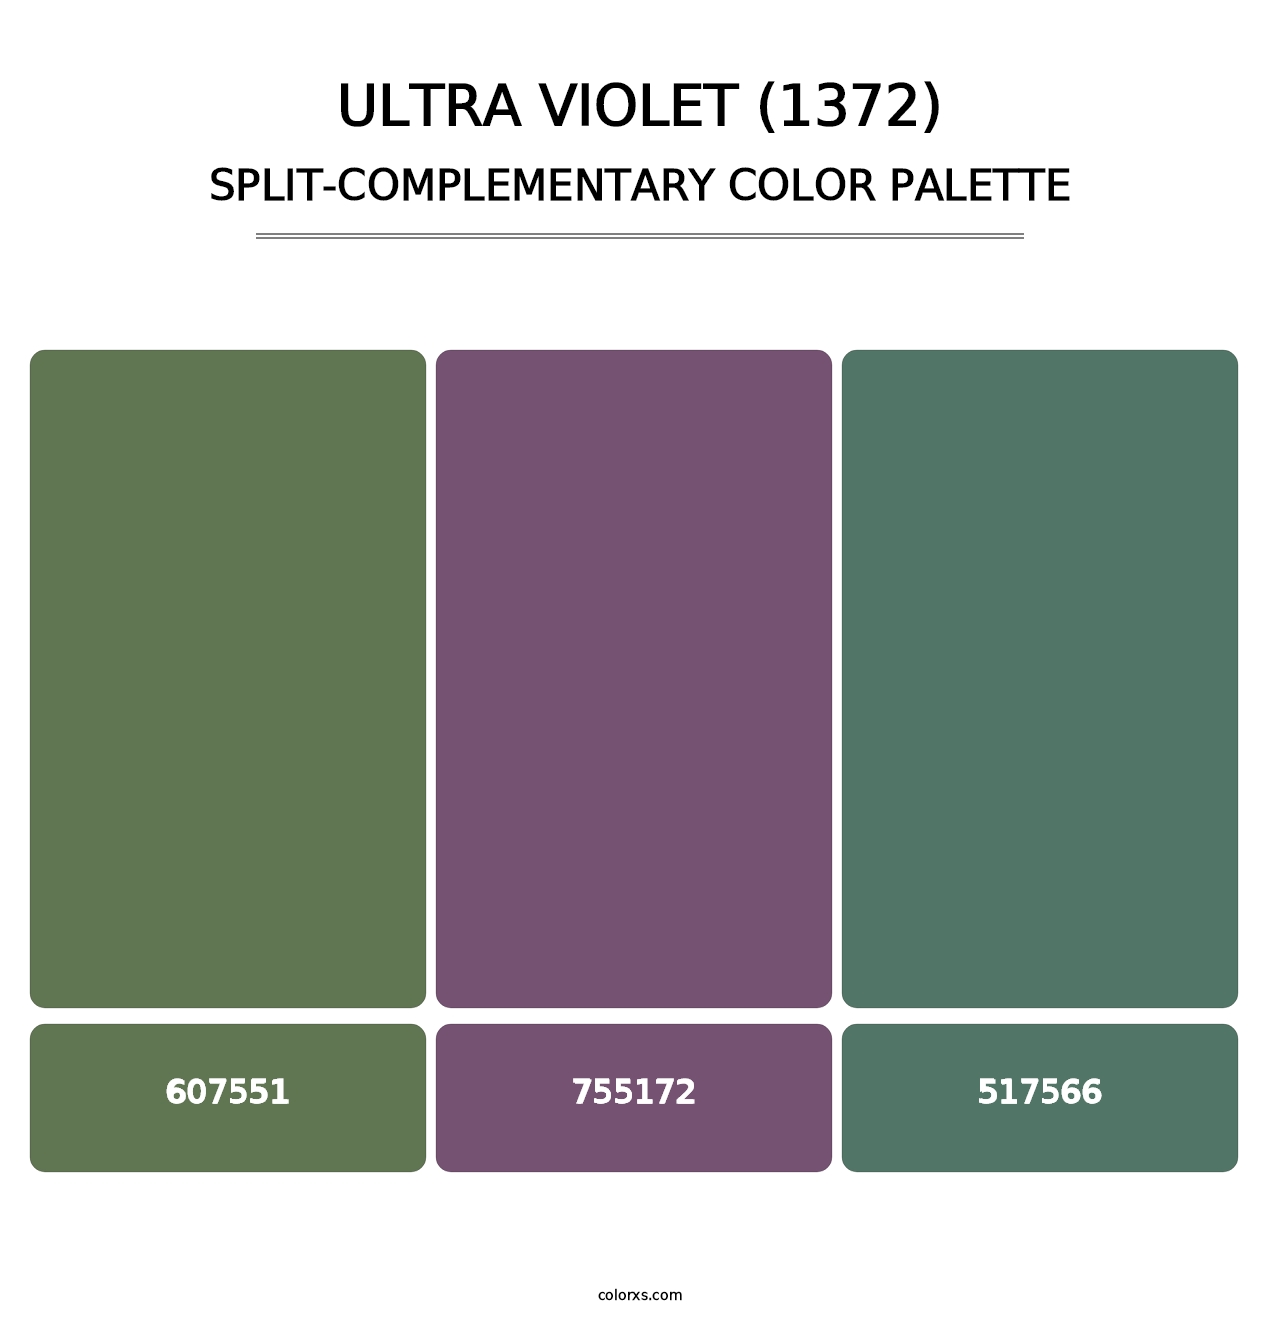 Ultra Violet (1372) - Split-Complementary Color Palette